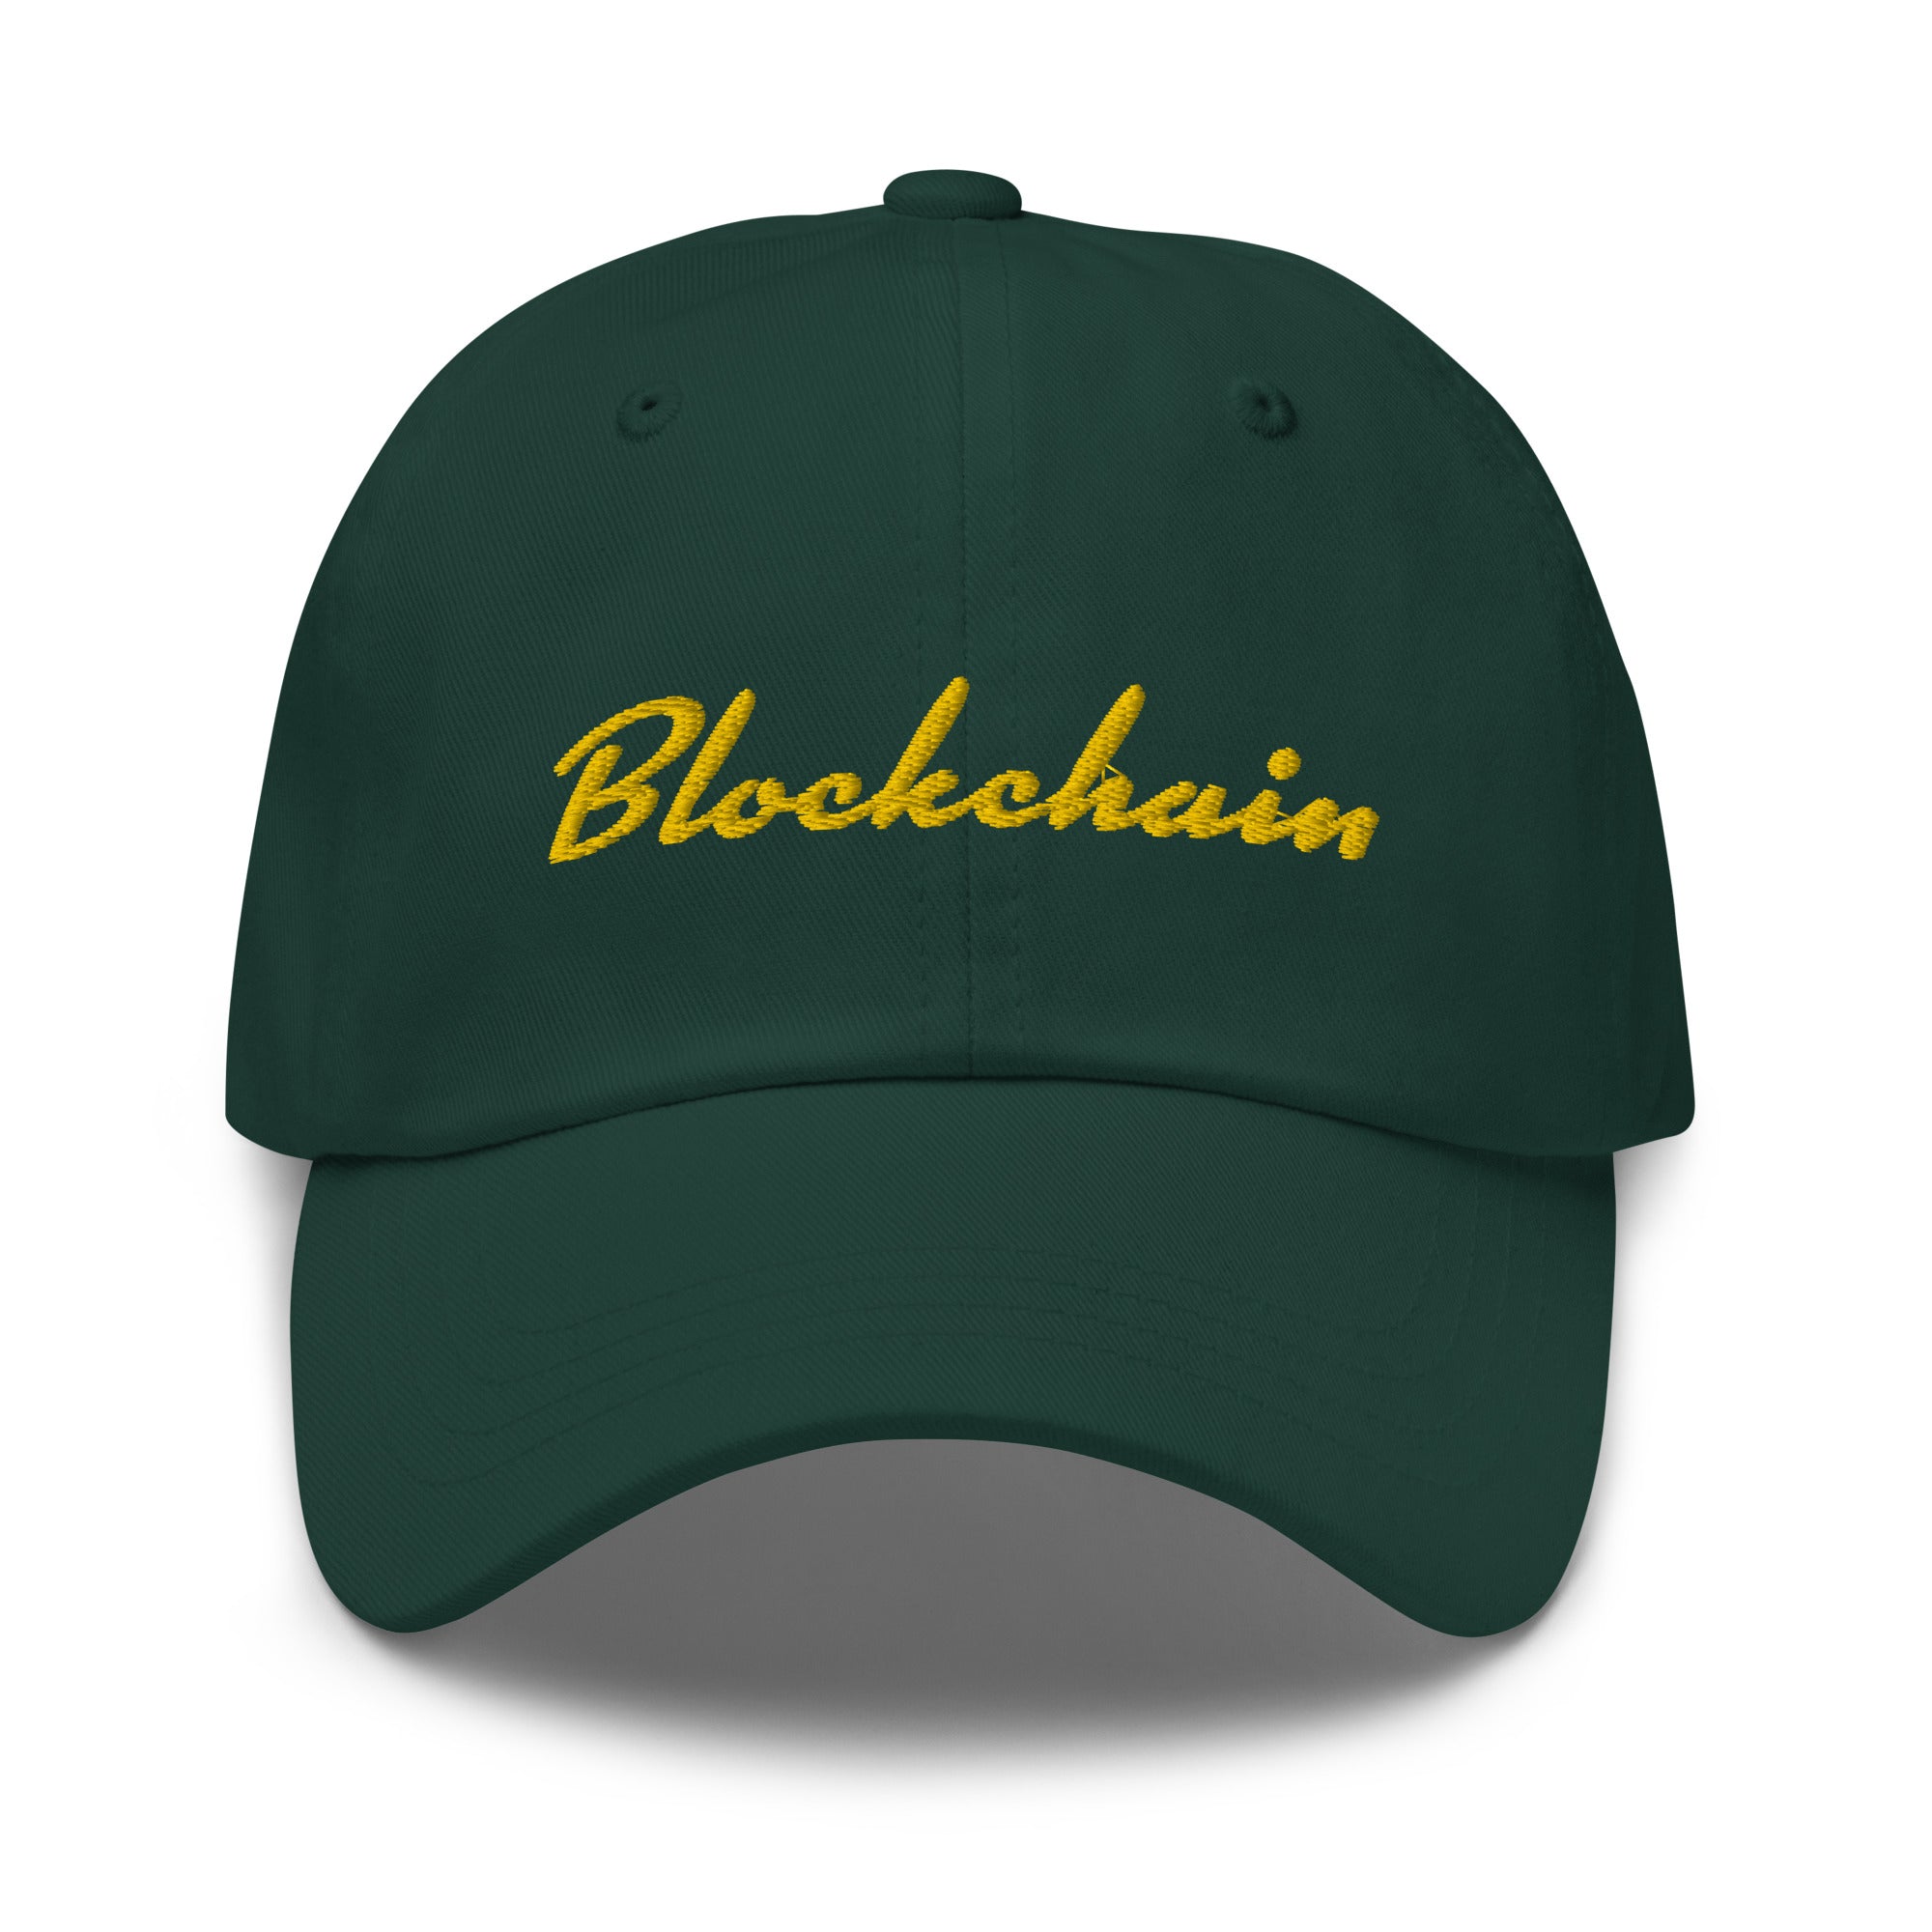 Blockchain Dad hat